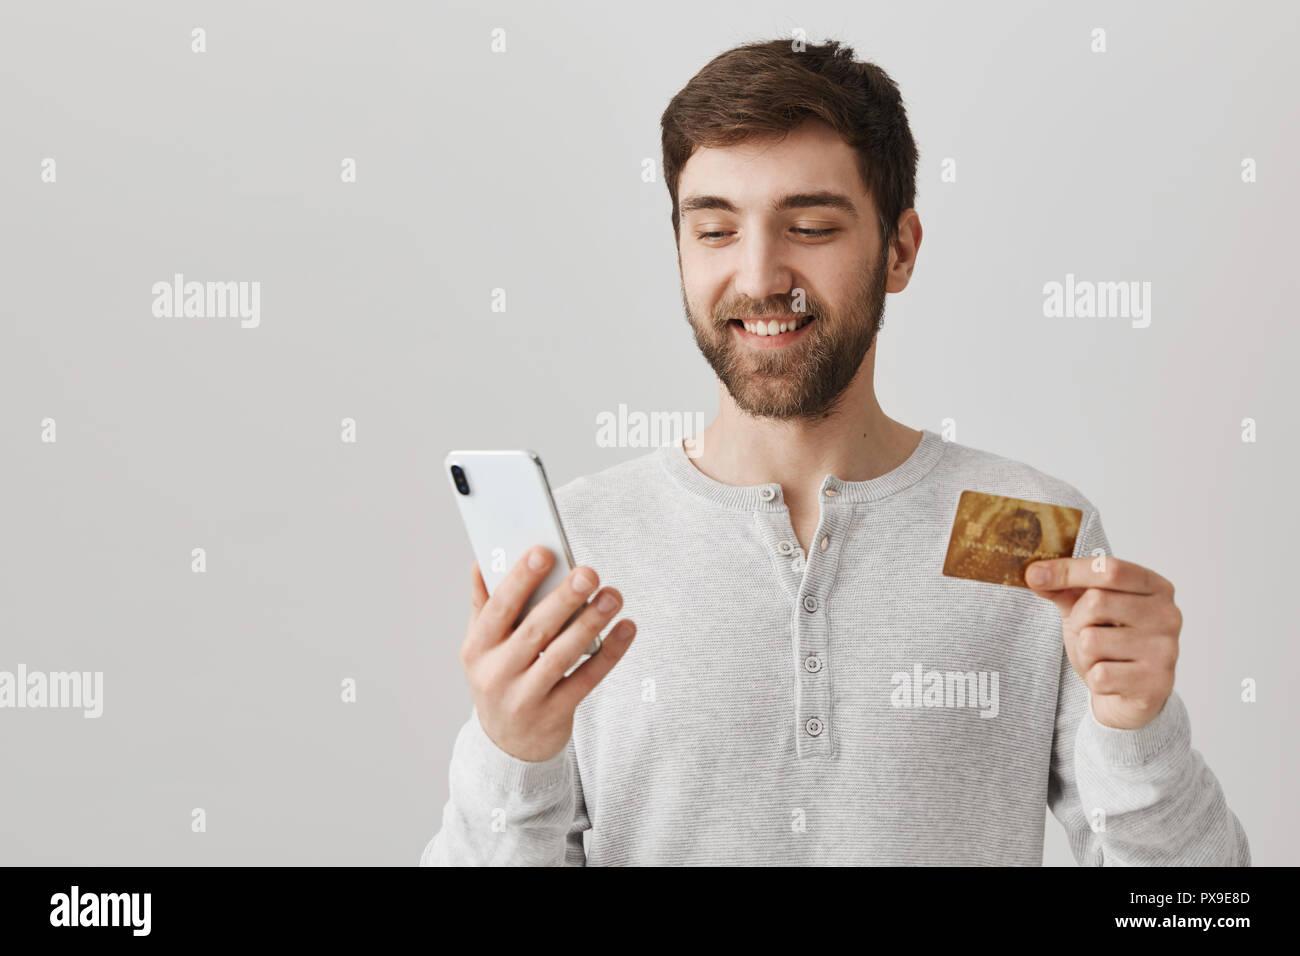 Heureux l'homme à barbe, holding smartphone et une carte de crédit, à la recherche à l'écran comme s'il n'est jusqu'à acheté quelque chose, debout sur fond gris. Guy veut impressionner copine et dress Banque D'Images